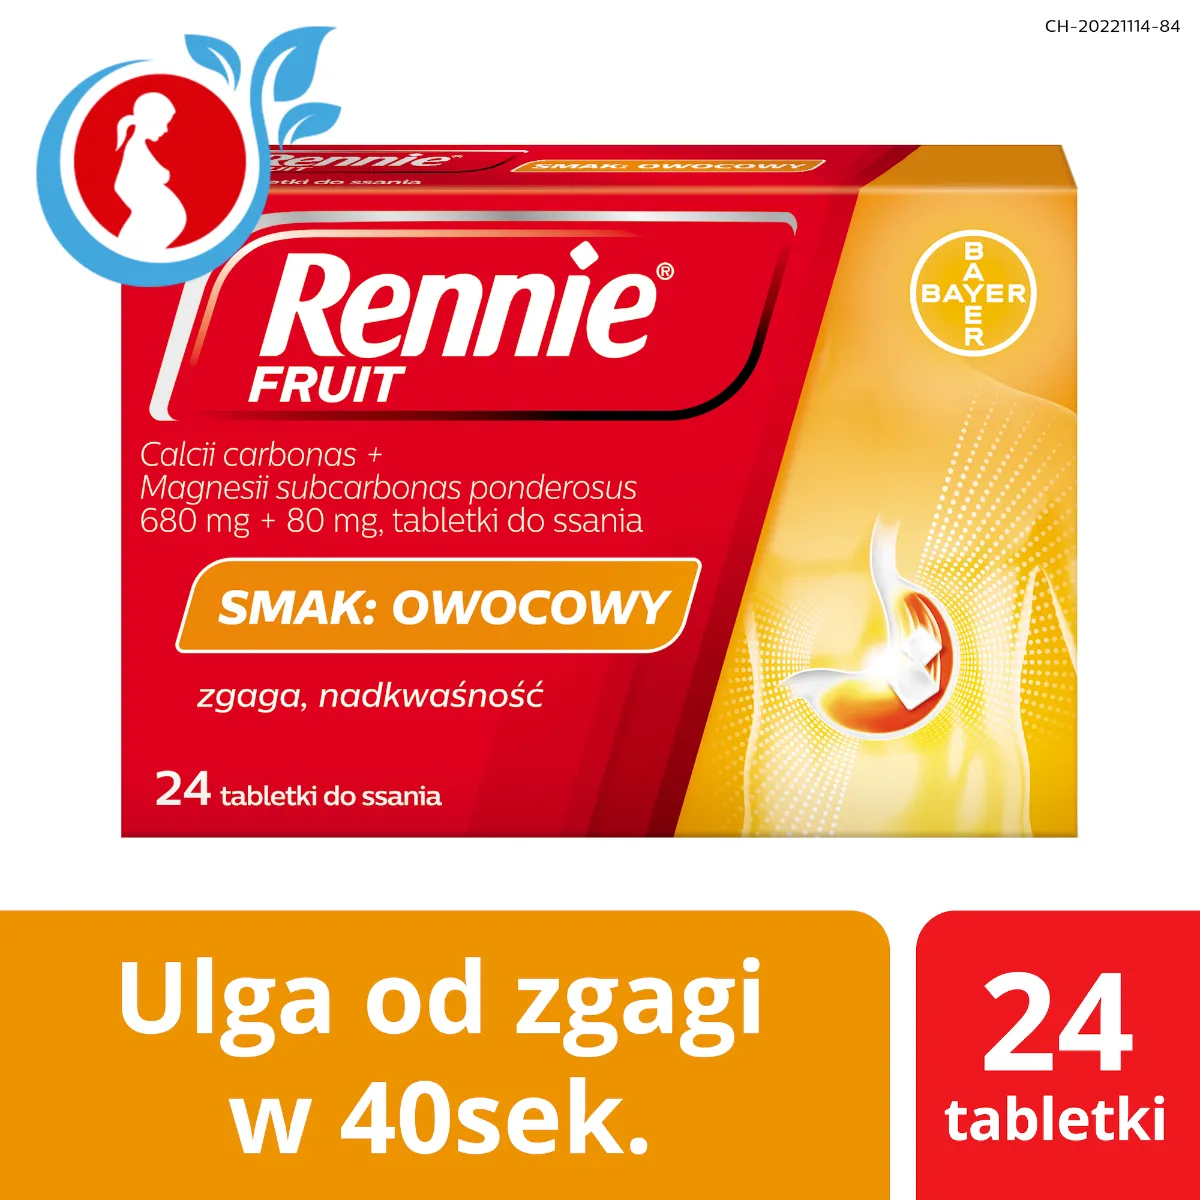 Rennie Fruit, 680 mg + 80 mg, smak owocowy, 24 tabletki do ssania 